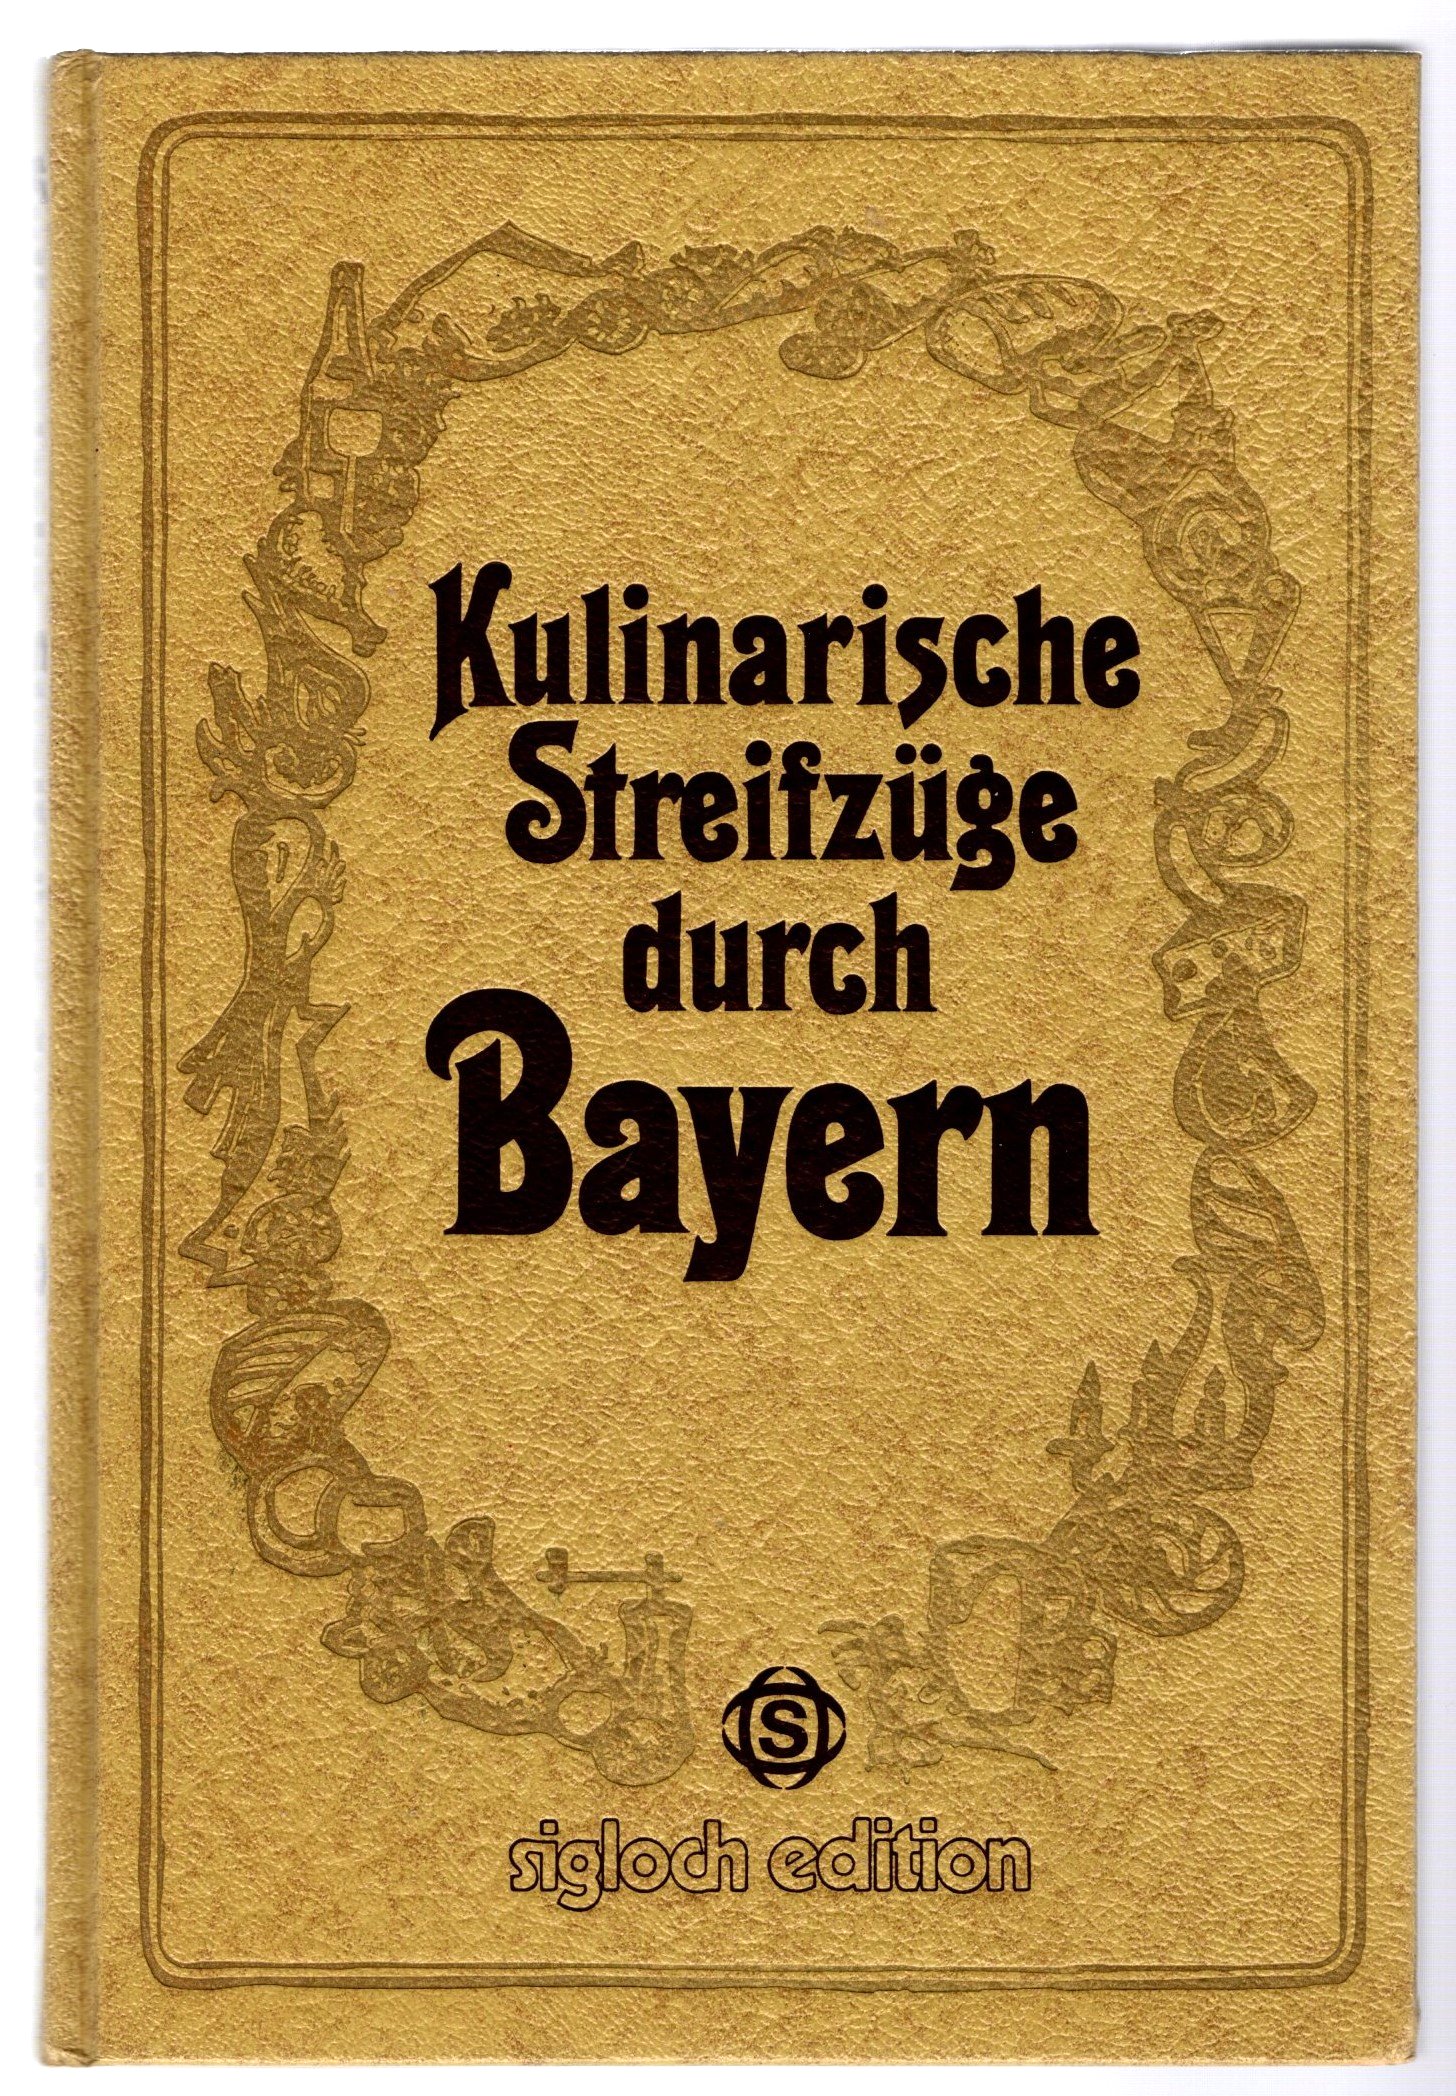 Image for Kulinarische Streifzuge Durch Bayern, Sigloch Edition :  Culinary Excursions through Bavaria, Sigloch Edition